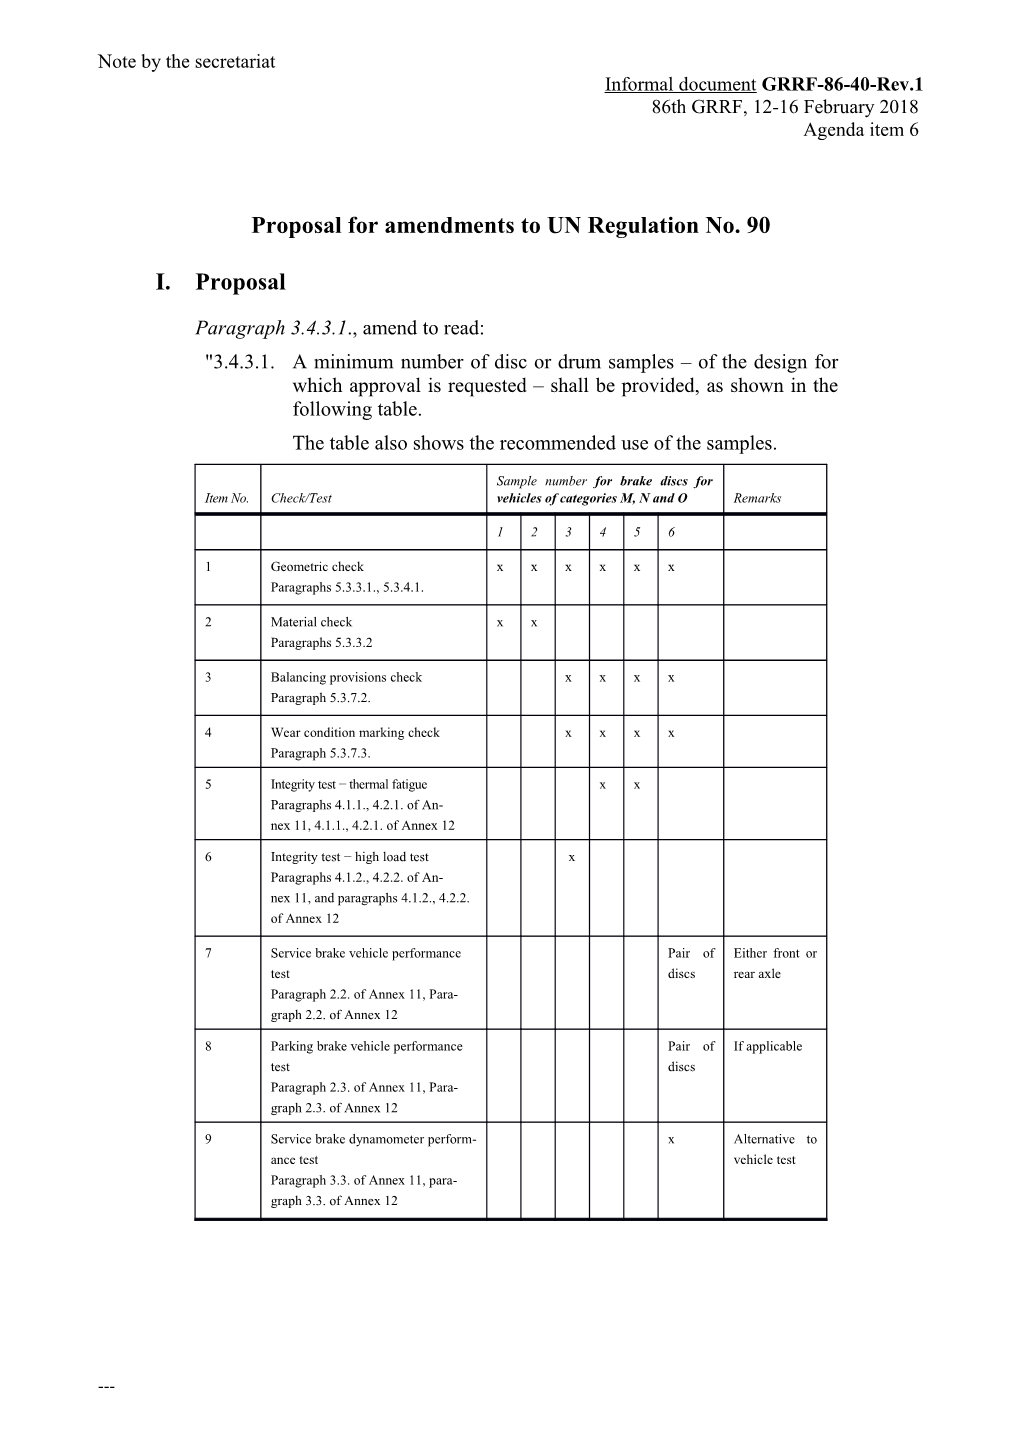 Proposal for Amendments to UN Regulation No. 90